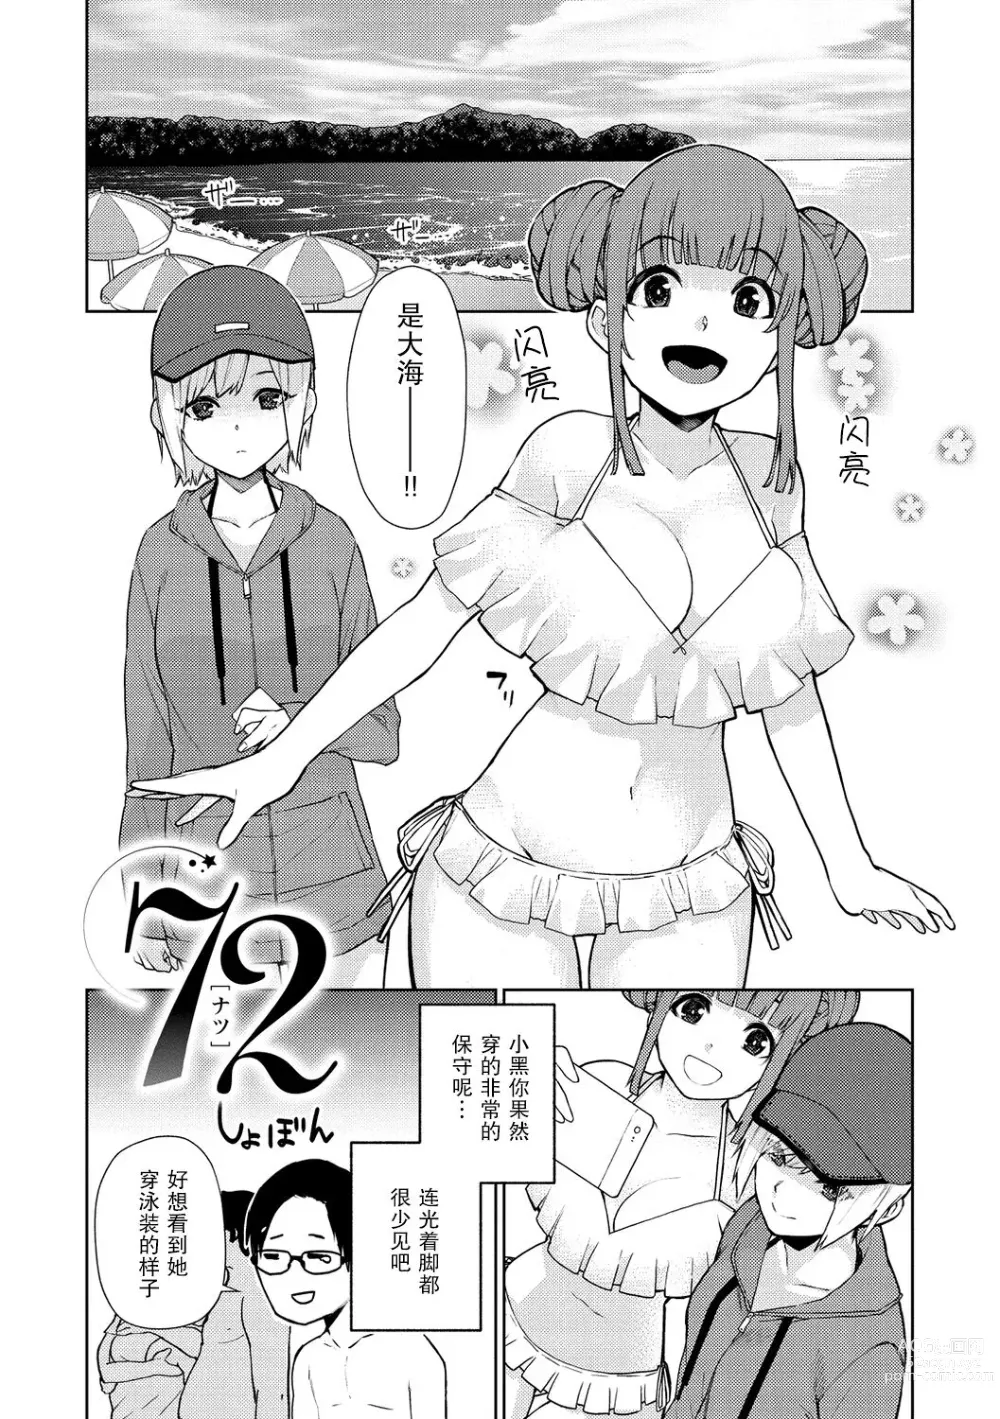 Page 2 of manga 72 - natsu - Summer